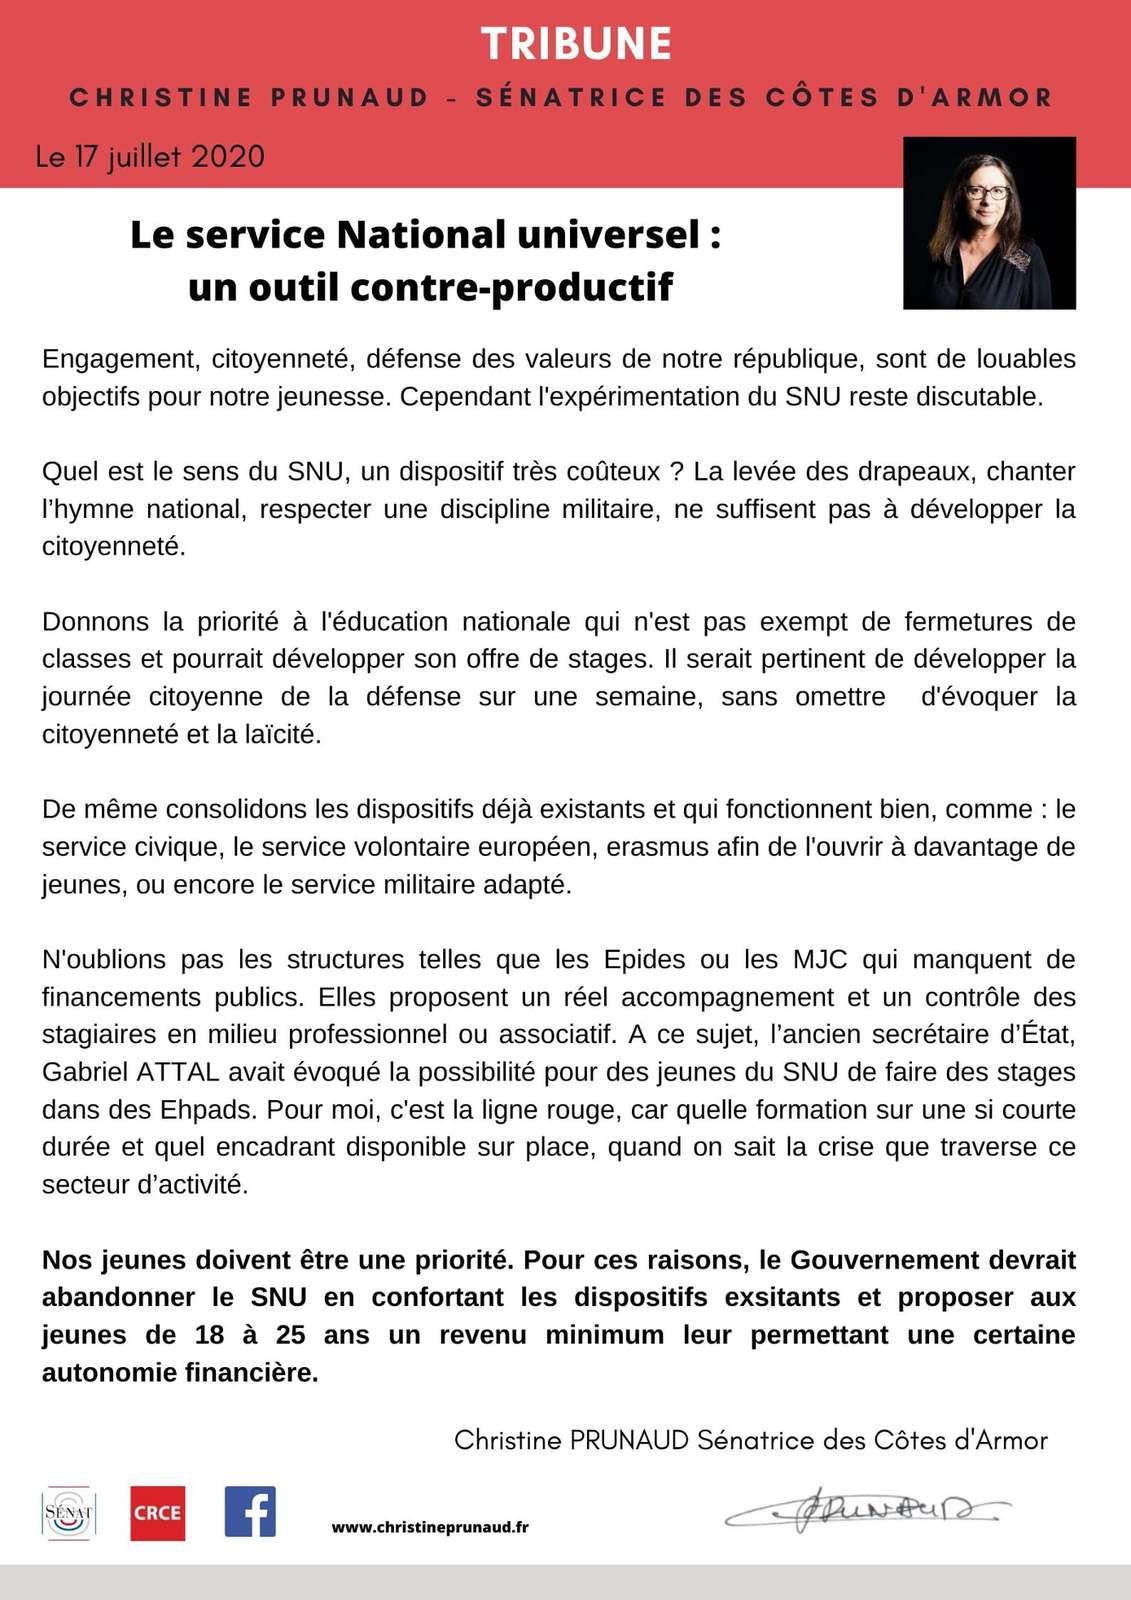 Le service national universel, un outil contre-productif: Christine Prunaud, sénatrice communiste des Côtes d'Armor, 17 juillet 2020 